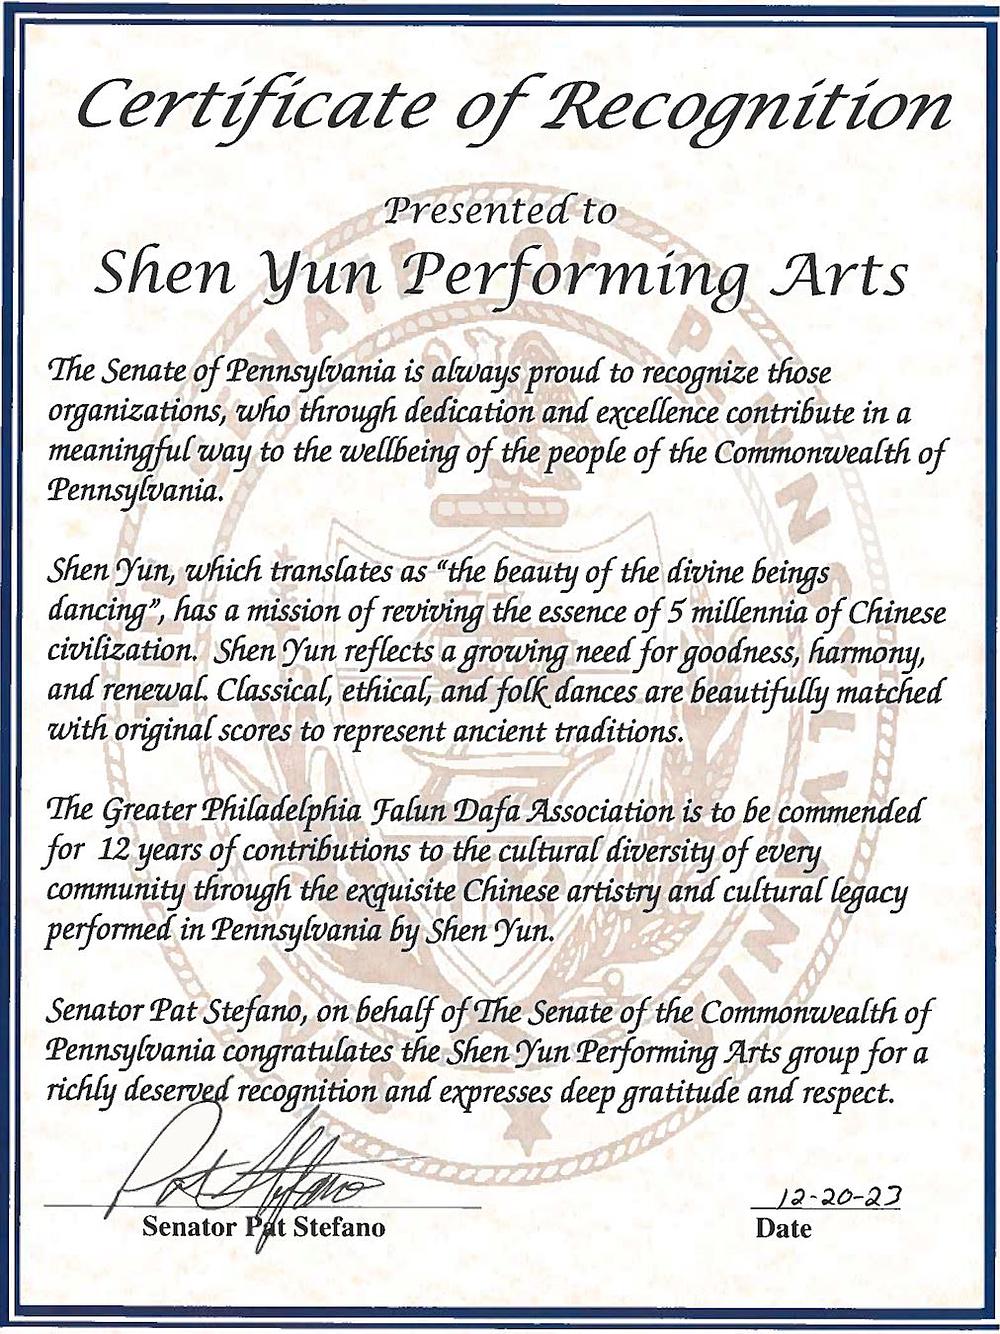  Prije nastupa Shen Yuna u Pennsylvaniji krajem siječnja i sredinom ožujka, senator Pat Stefano izdao je Certifikat o priznanju u ime Senata Commonwealtha Pennsylvanije. (Dostavio voditelj Shen Yuna u Pennsylvaniji)